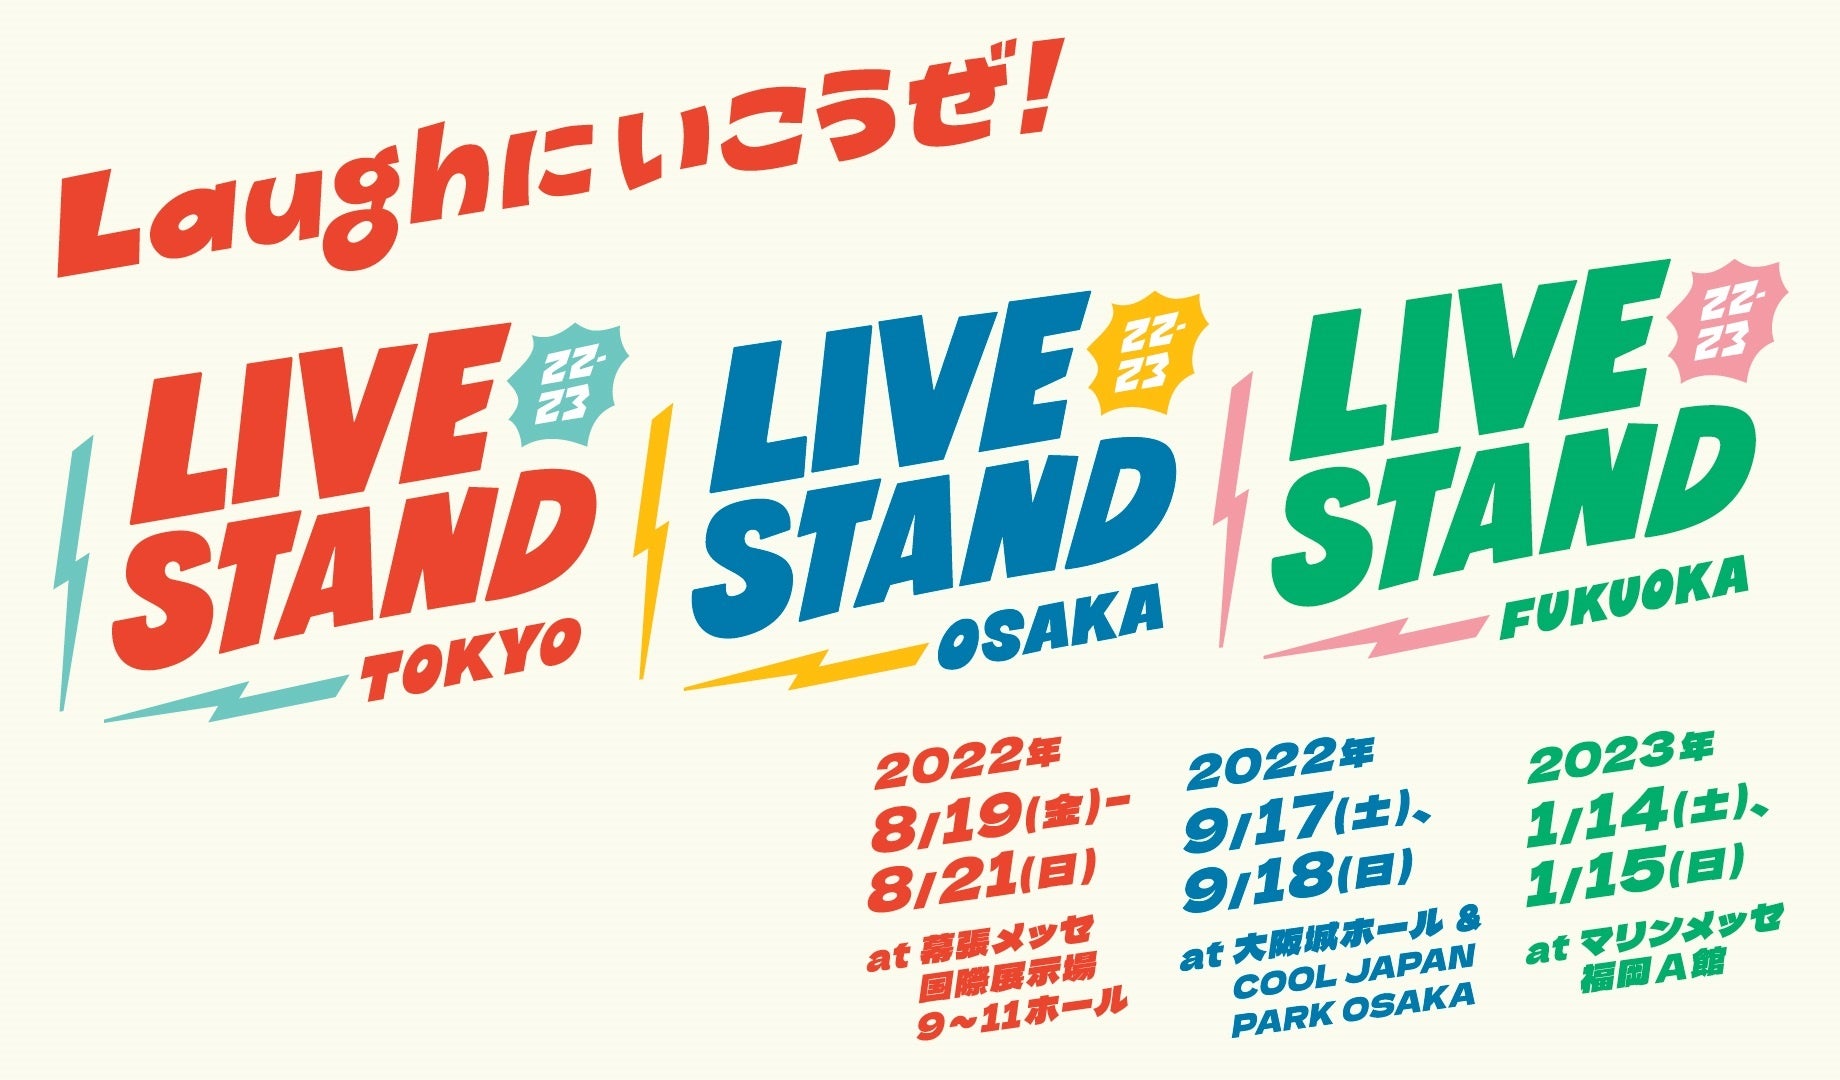 追加出演者を加えた計101組の第一弾日割り発表！ライブスタンジャーによるオフィシャルムービーが公開！クラウドファンディングもついに始動！『LIVE STAND 22-23 TOKYO』のサブ画像1